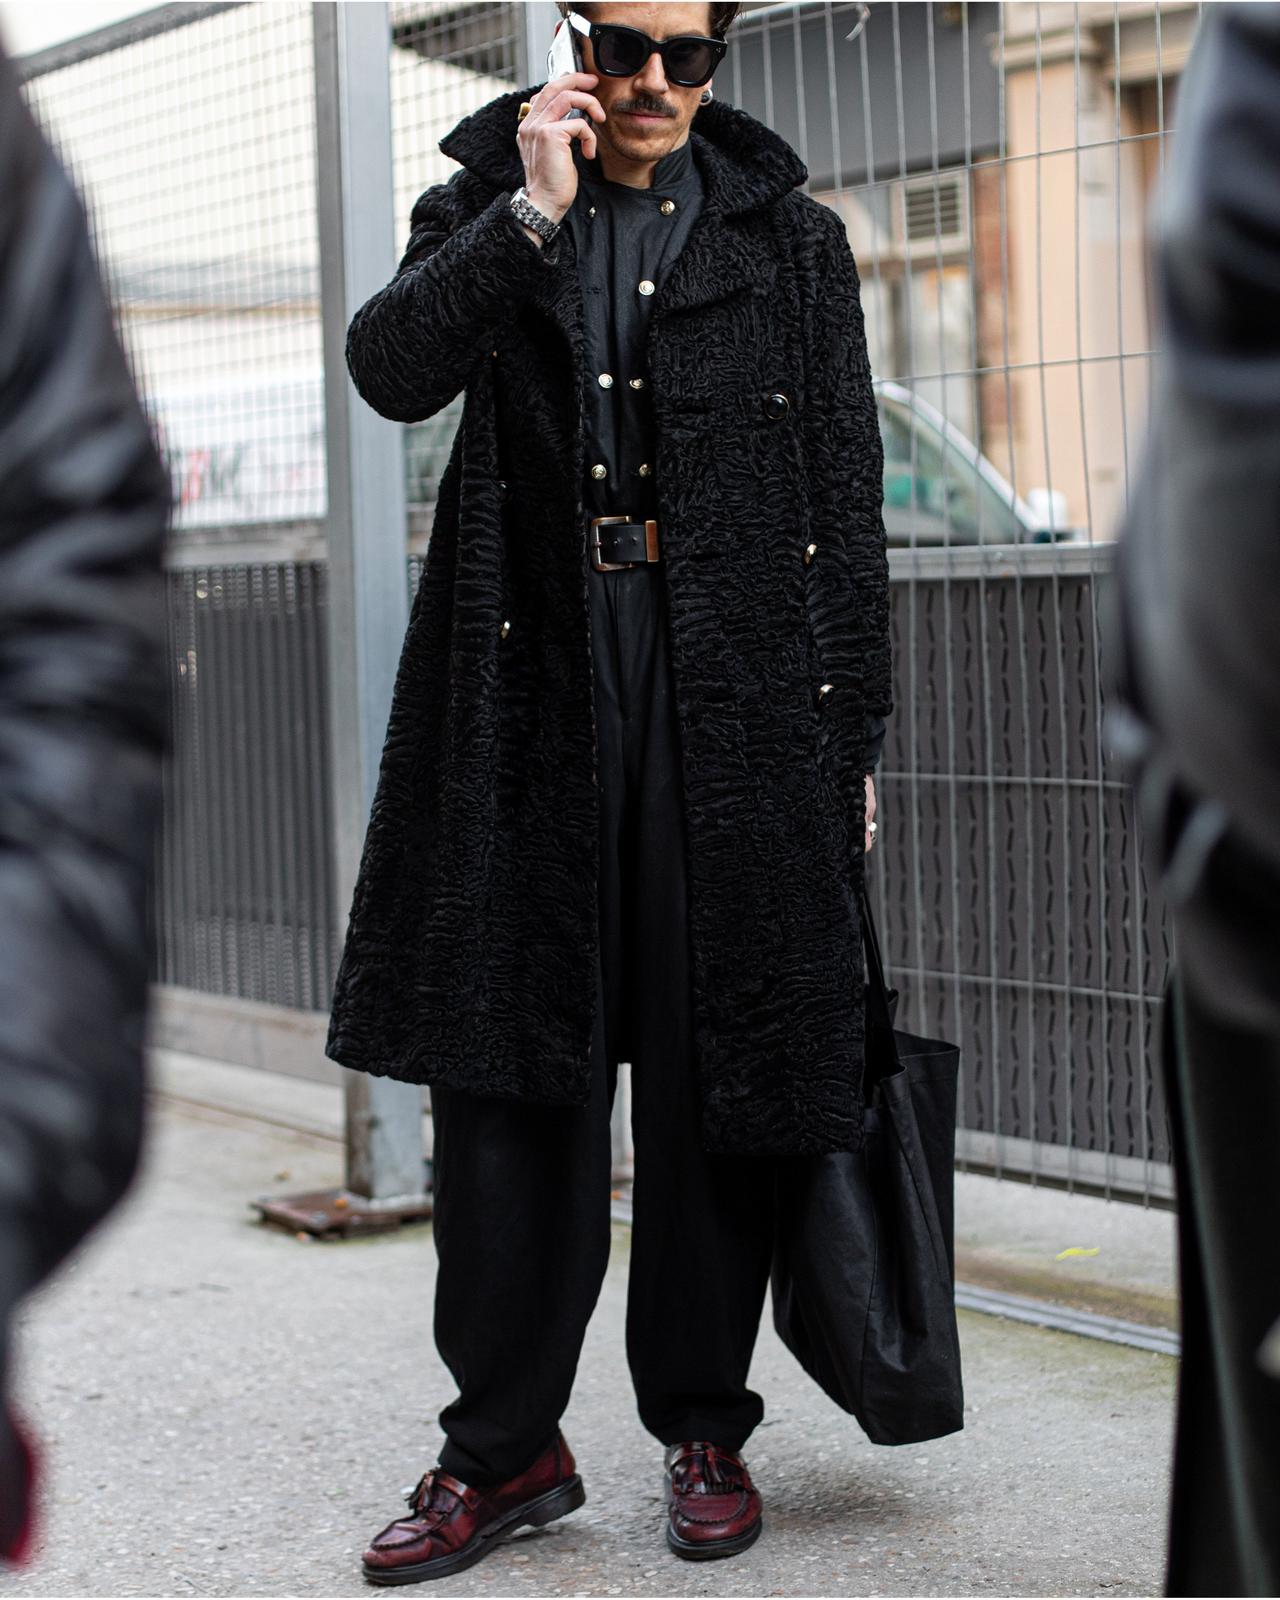 Un homme en manteau noir parlant sur un téléphone portable